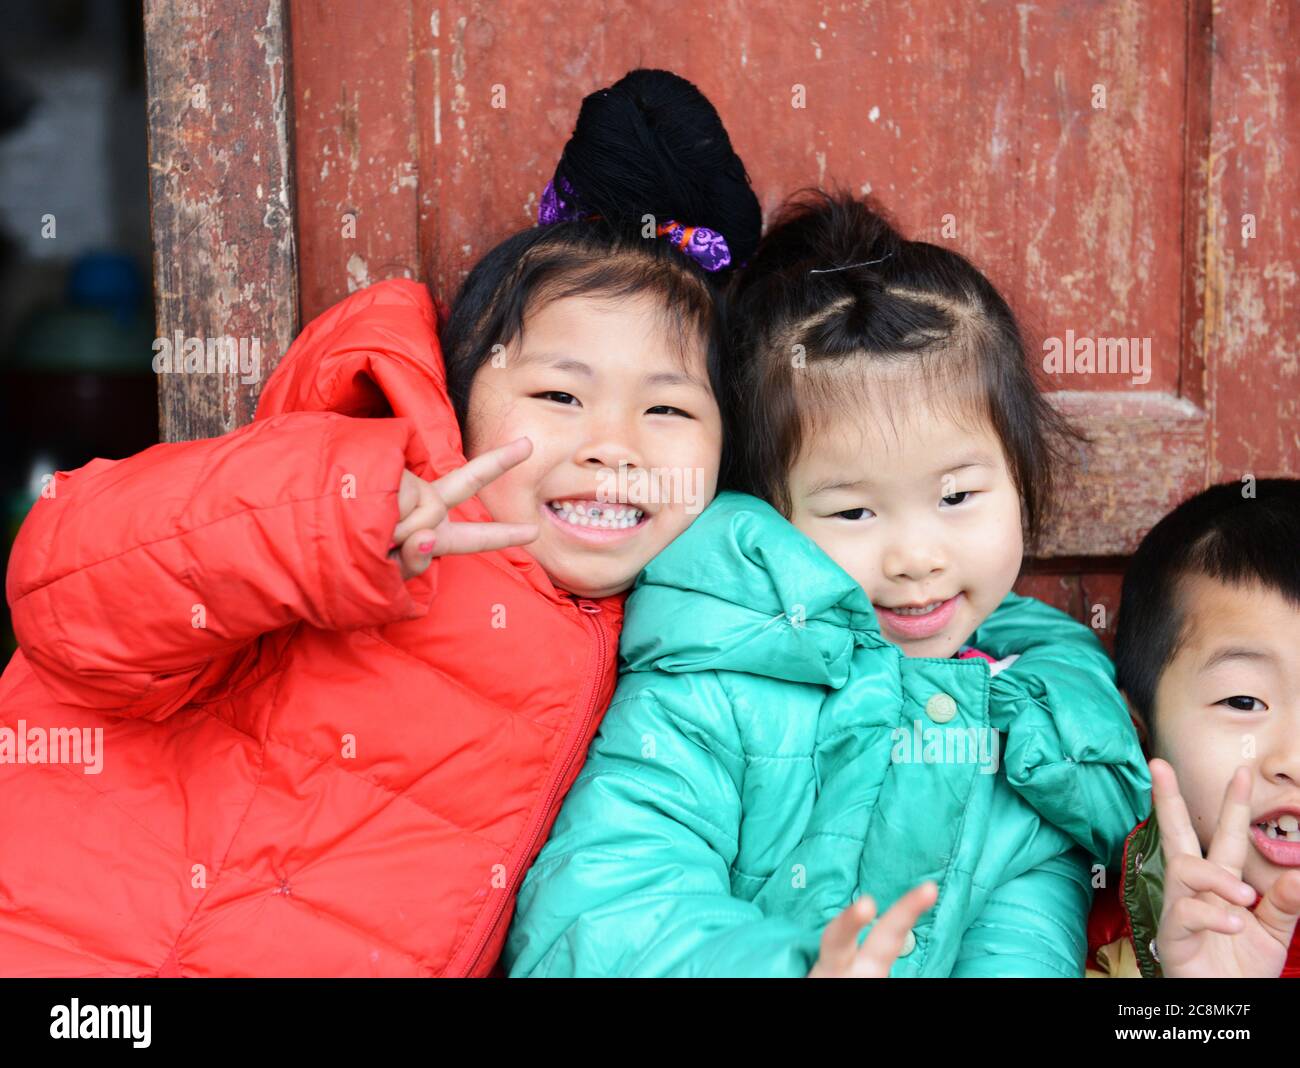 Miao children posing for a photo in Guizhou, China. Stock Photo